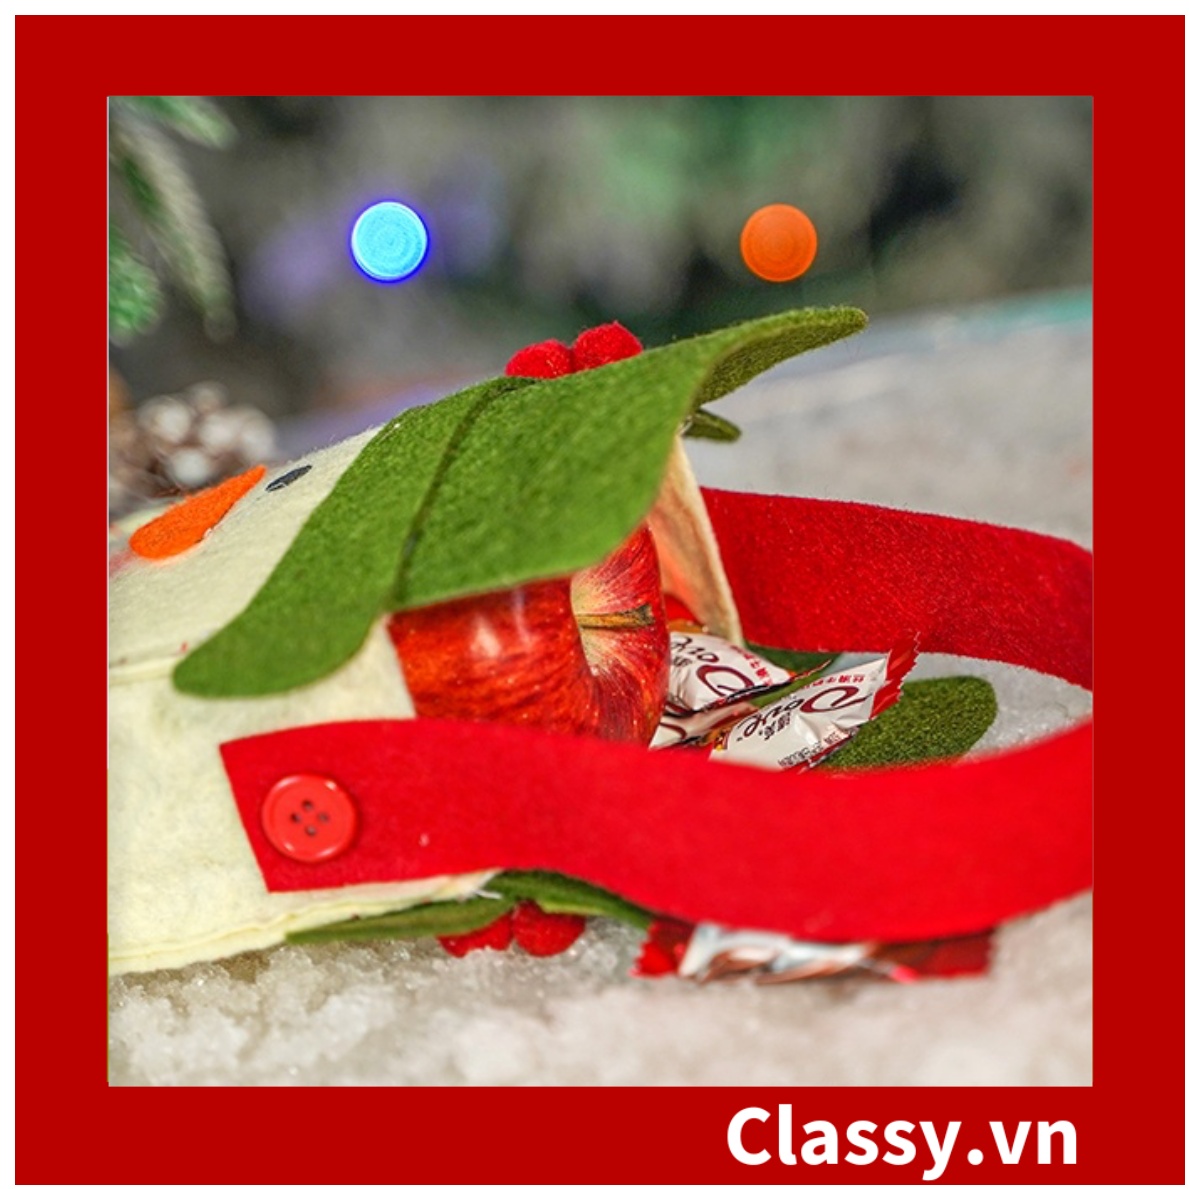 Túi Quà Giáng Sinh Túi vải không dệt đựng quà giáng sinh, trang trí nhà cửa, cây thông Q1803